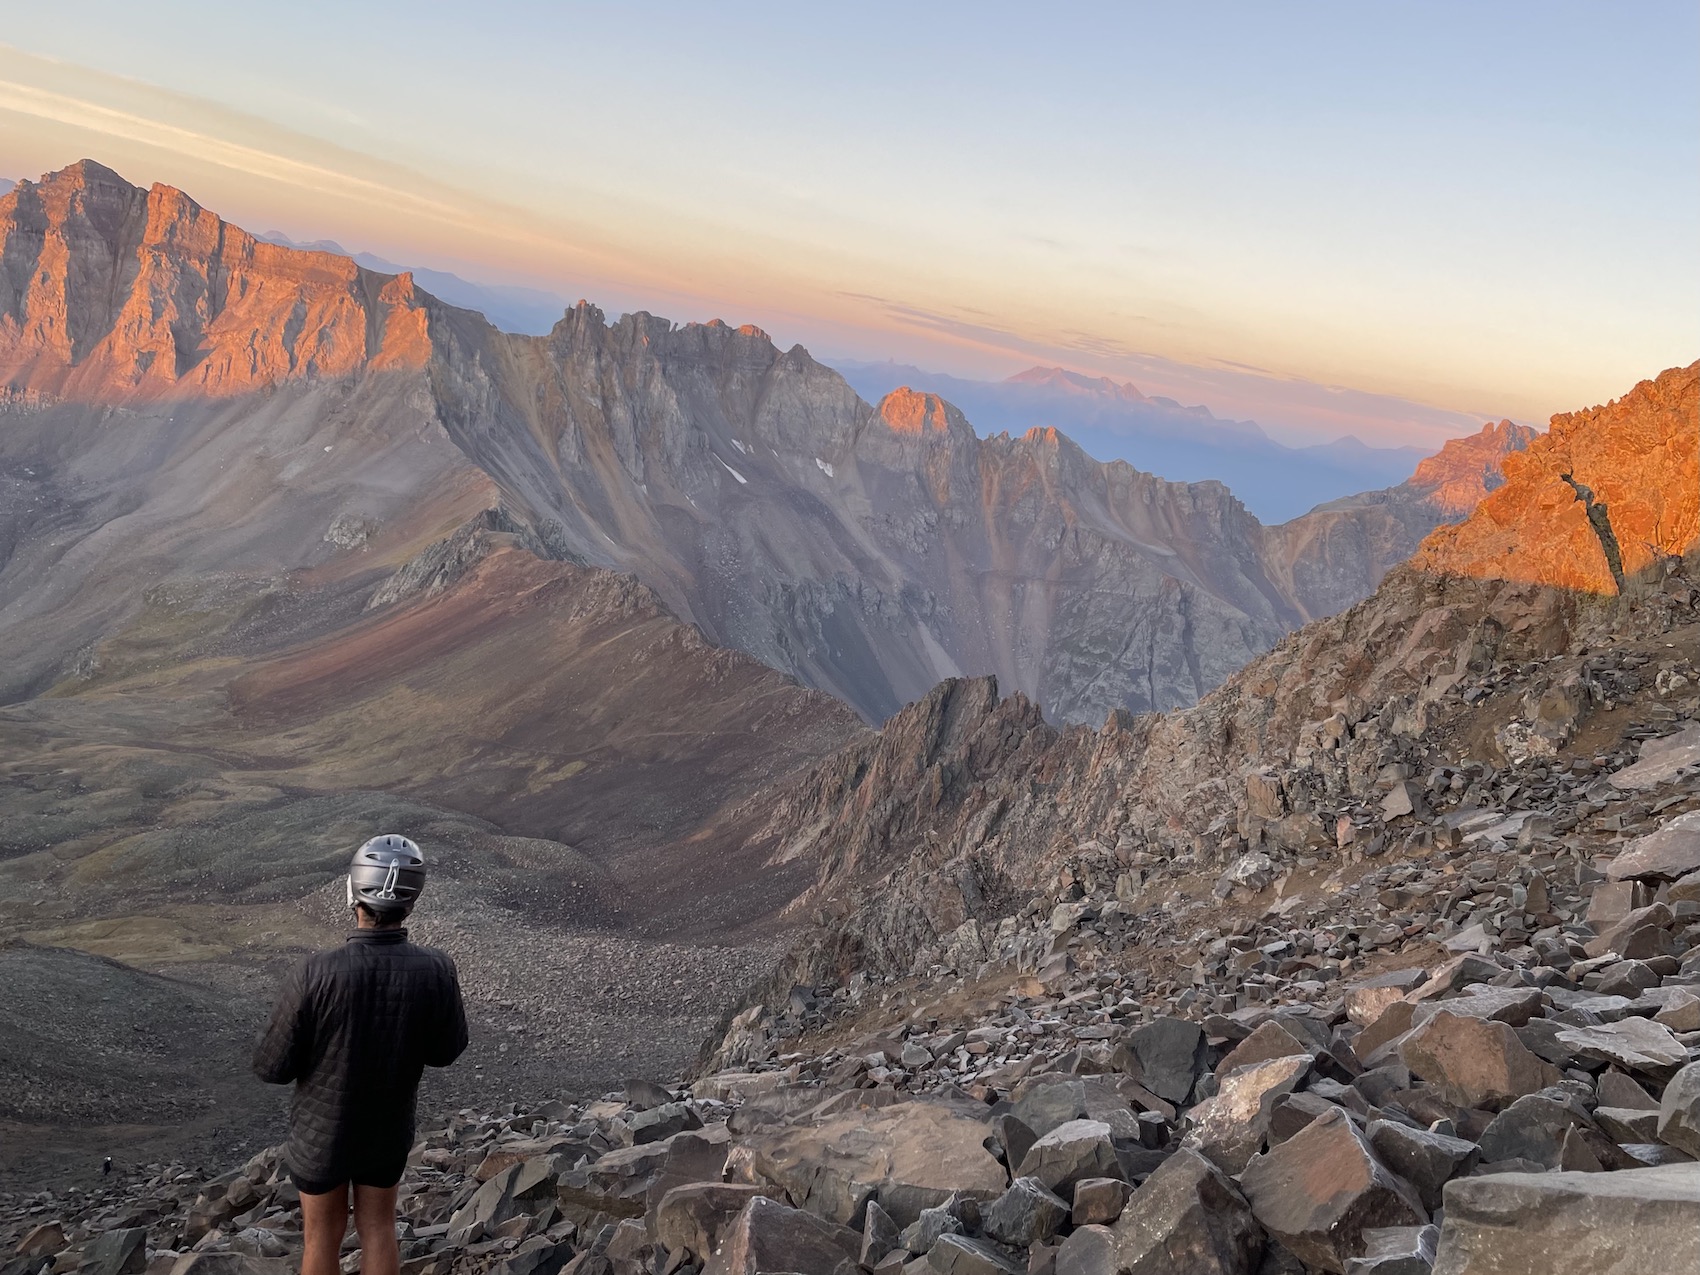 Garmin Fenix gps smartwatch helps navigate in mountains